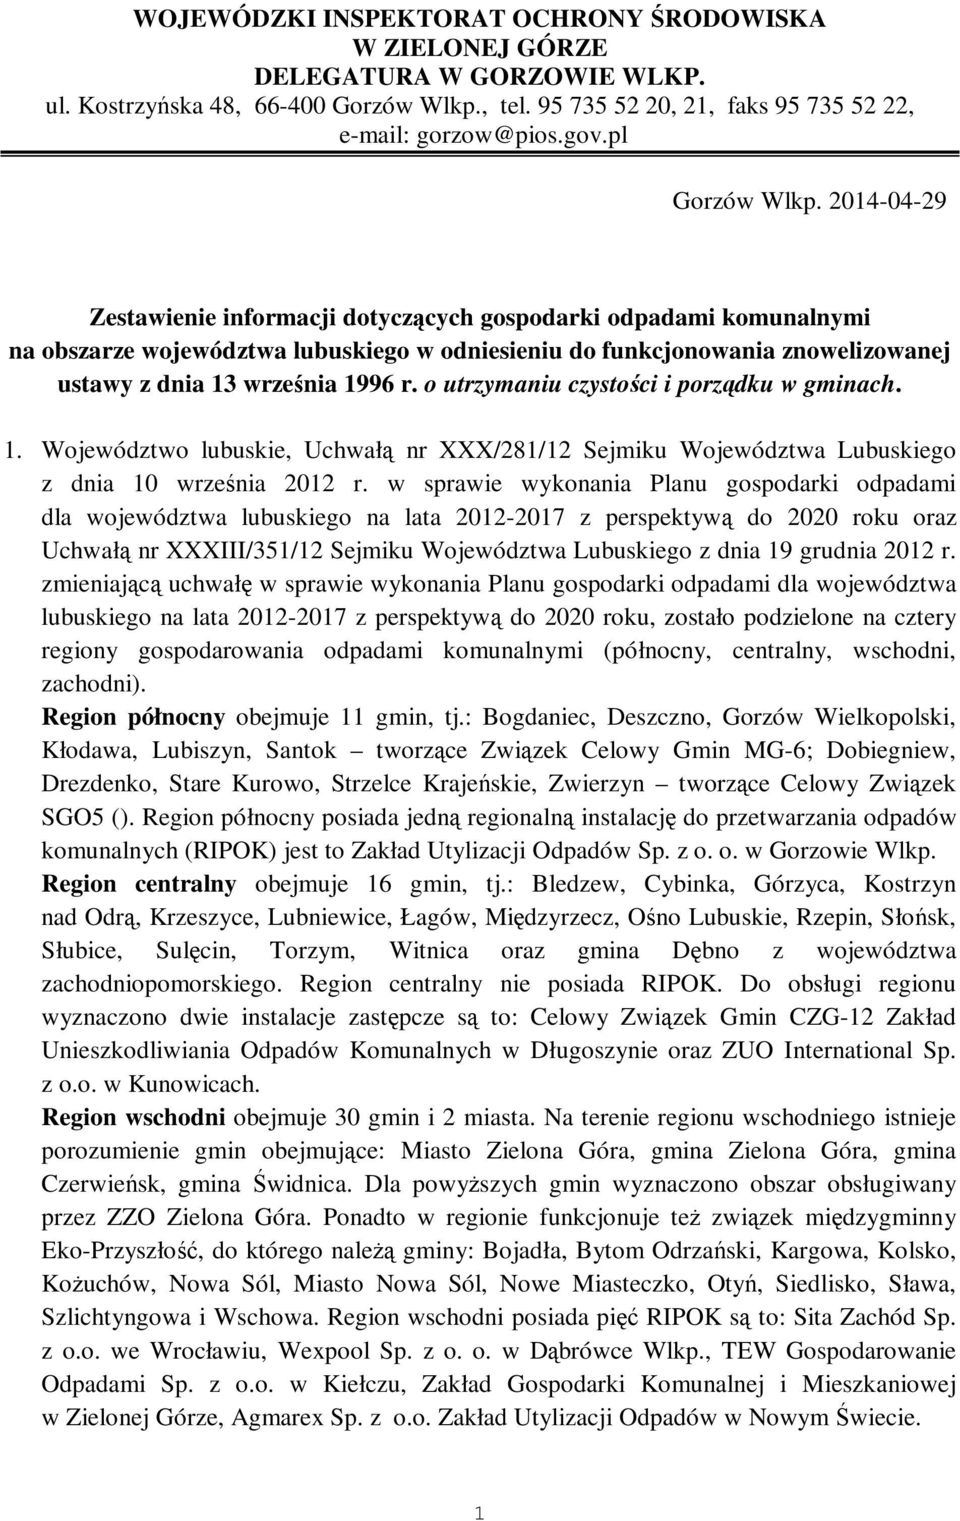 2014-04-29 Zestawienie informacji dotyczących gospodarki odpadami komunalnymi na obszarze województwa lubuskiego w odniesieniu do funkcjonowania znowelizowanej ustawy z dnia 13 września 1996 r.